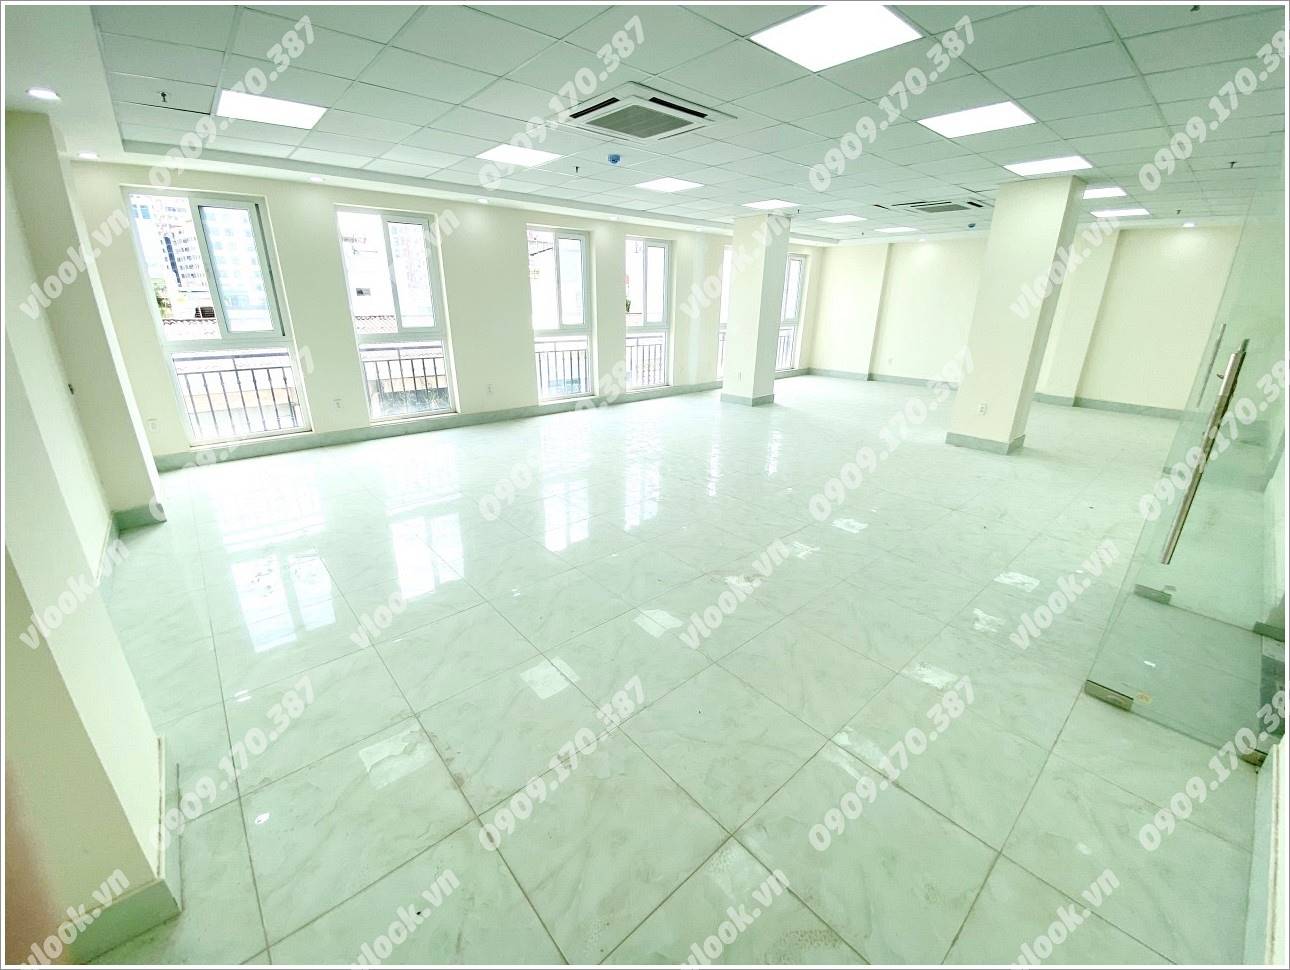 Cao ốc văn phòng cho thuê toà nhà Luxhome Building, Tân Cảng, Quận Bình Thạnh, TPHCM - vlook.vn